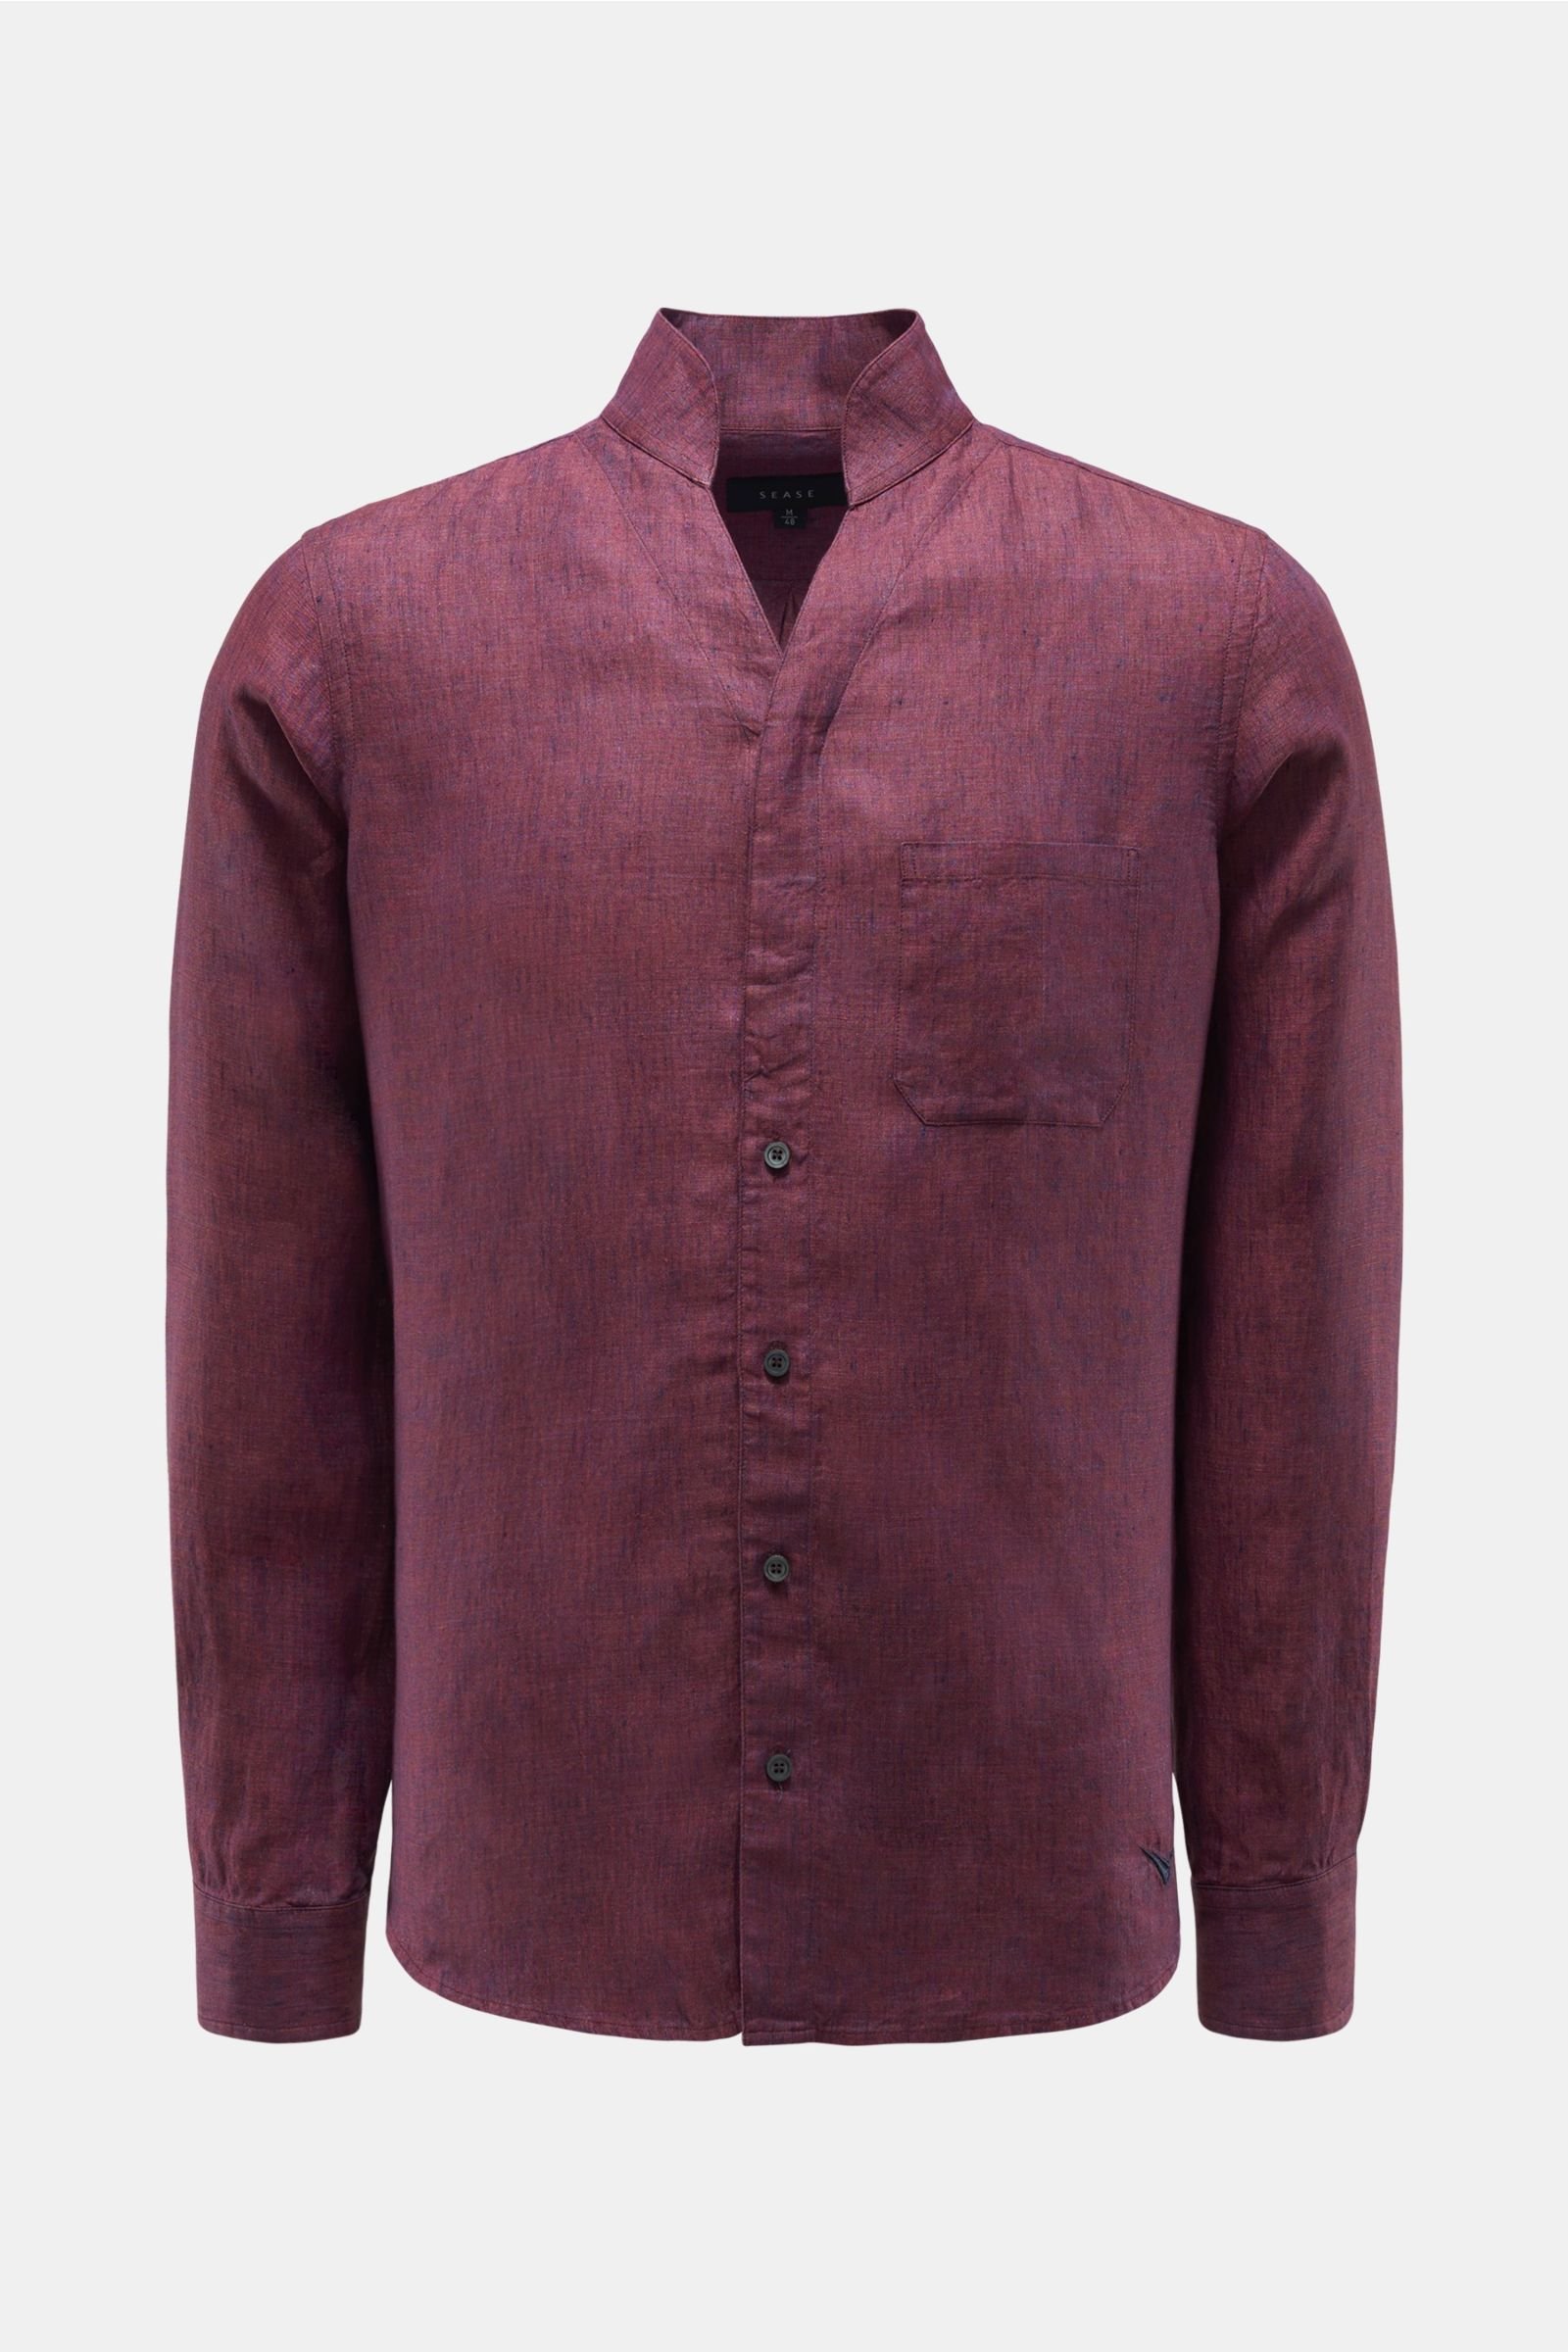 Linen shirt 'Ellen' standing collar burgundy